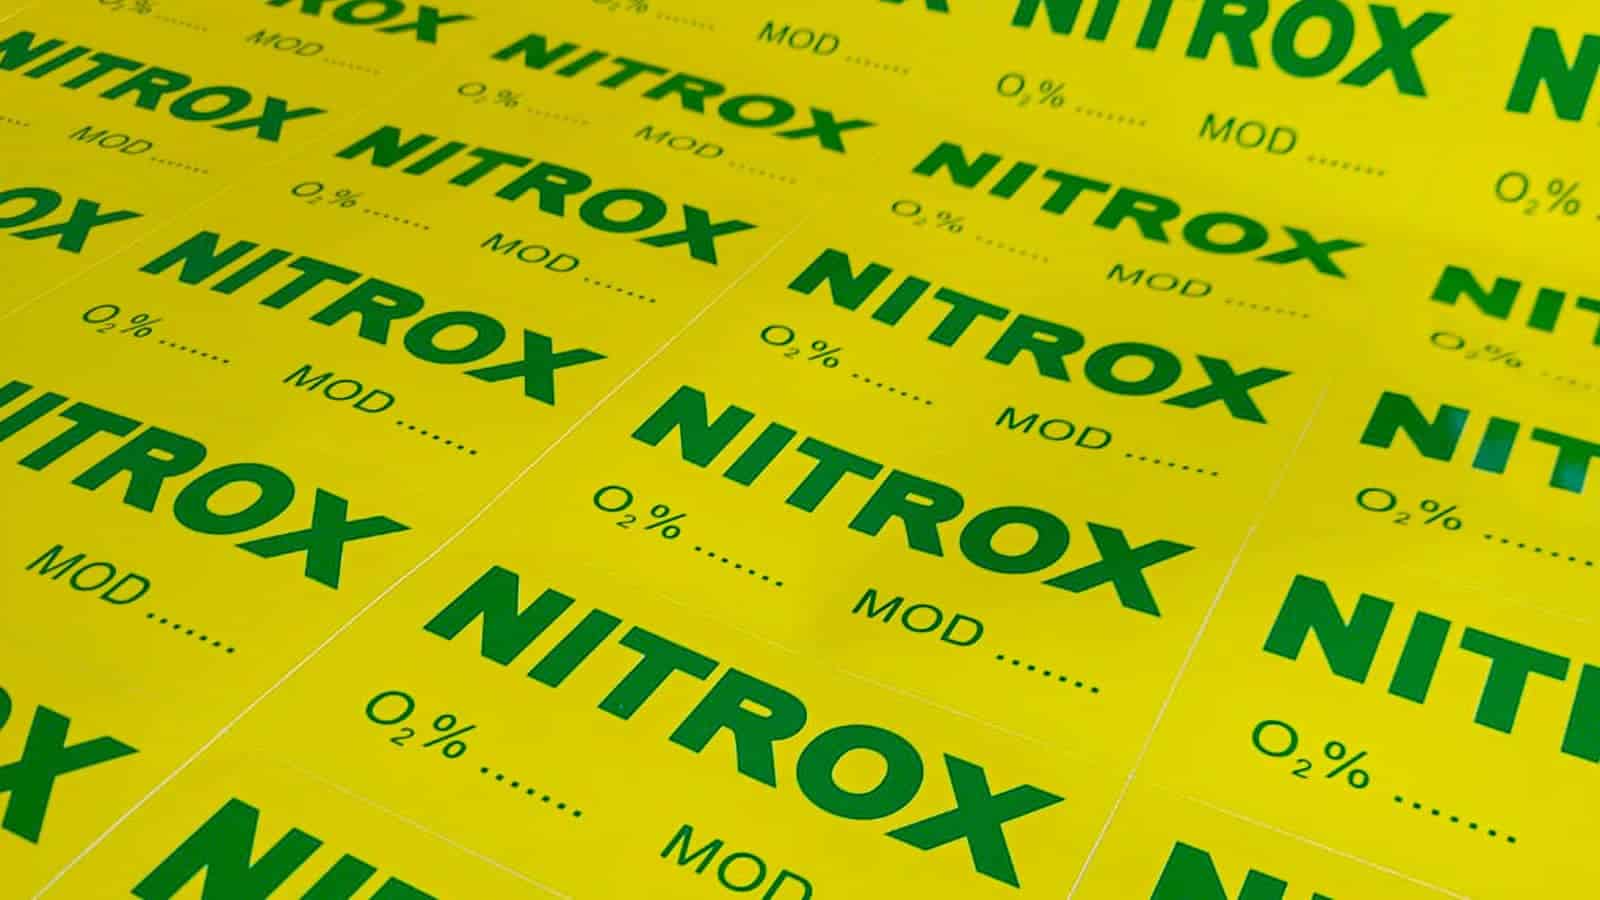 Jak obliczyć MOD dla nitroxu? 1szkoła nurkowania kraków